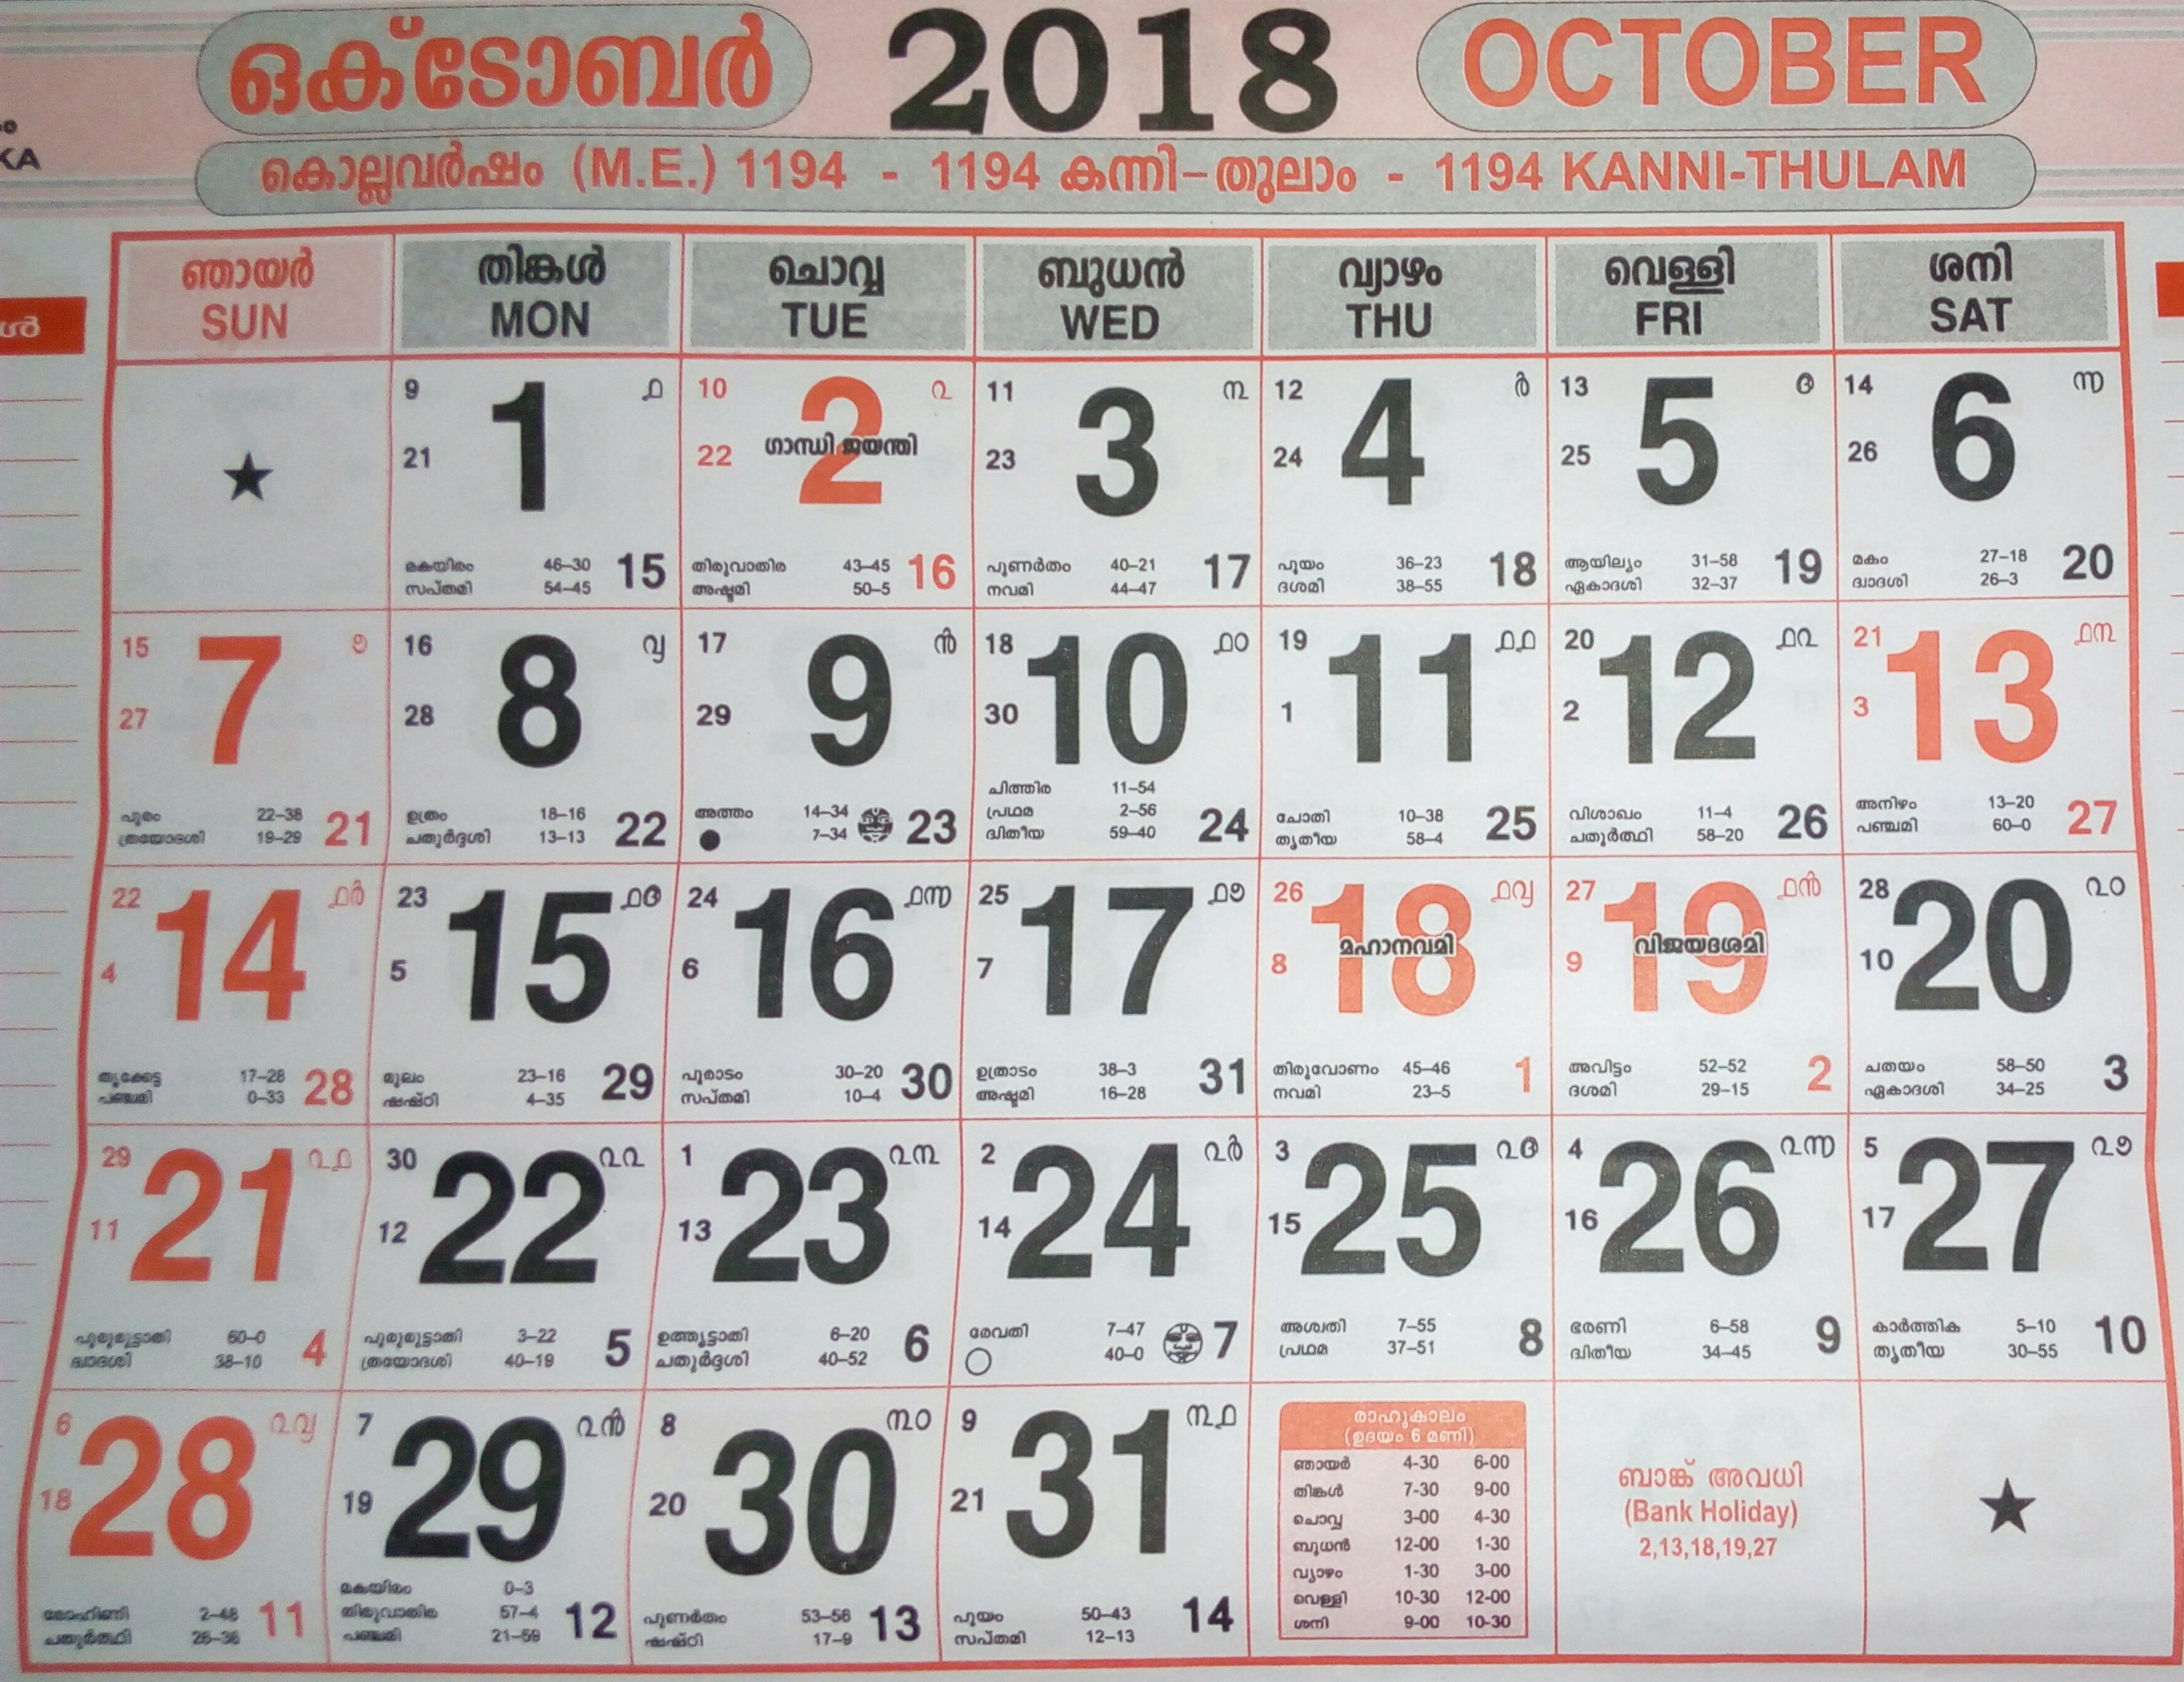 October 2018 Calendar Malayalam intended for October 2018 Calendar Malayalam